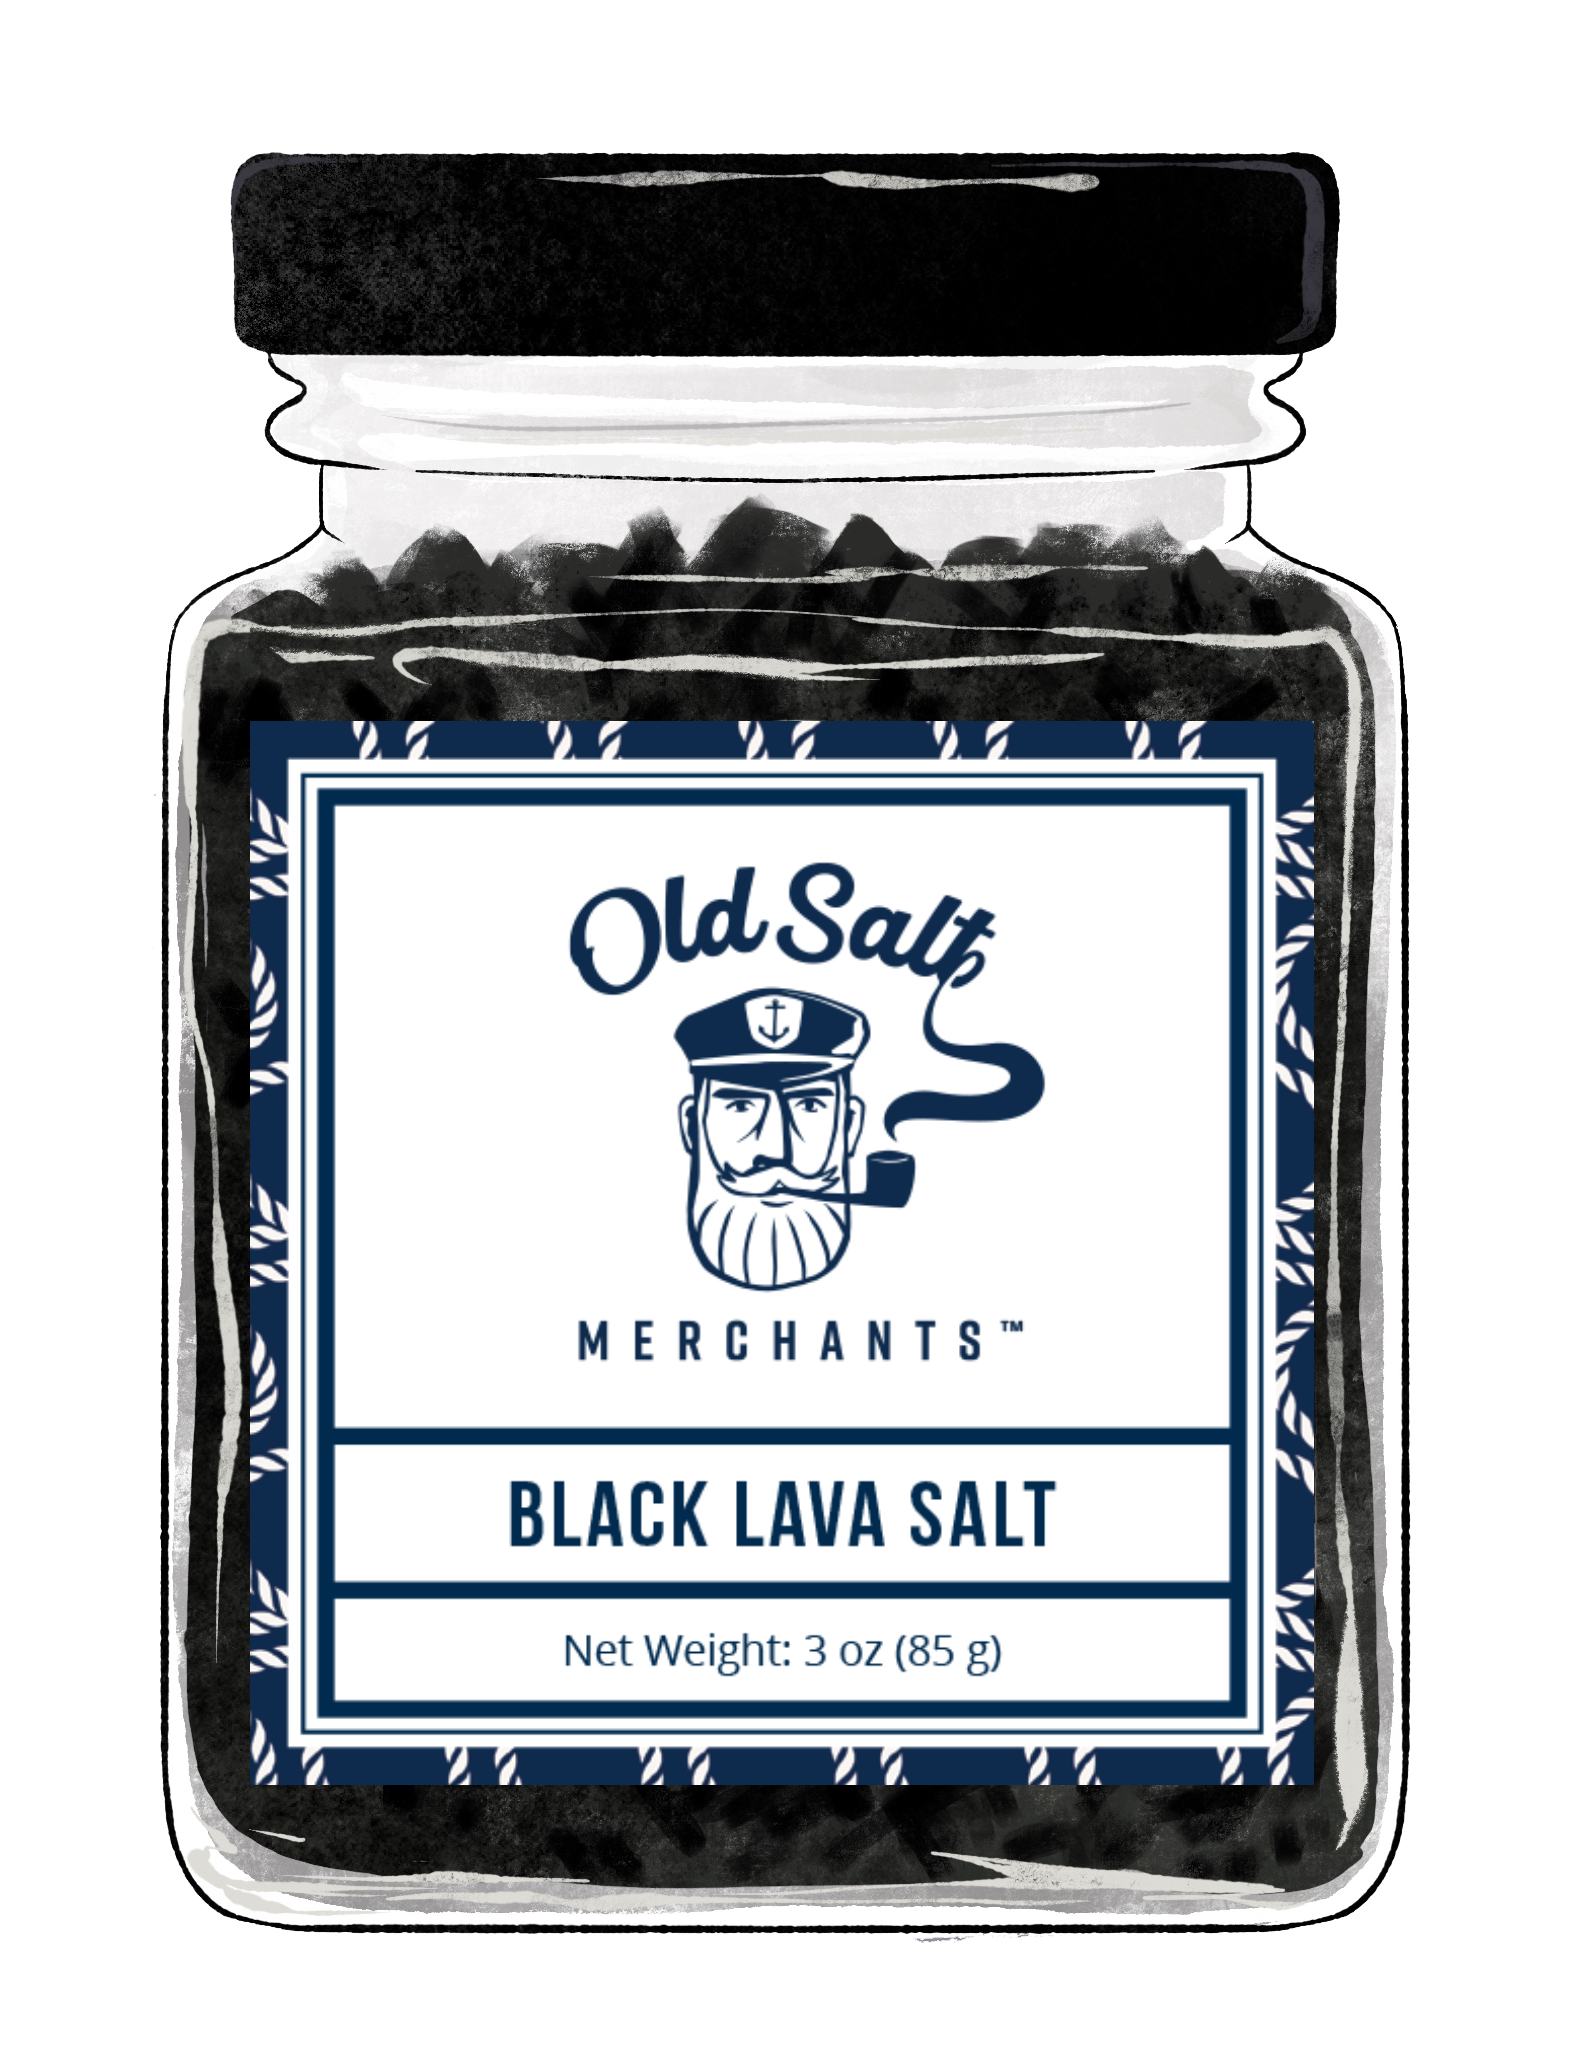 Black Lava Salt exclusive at Tastermonial